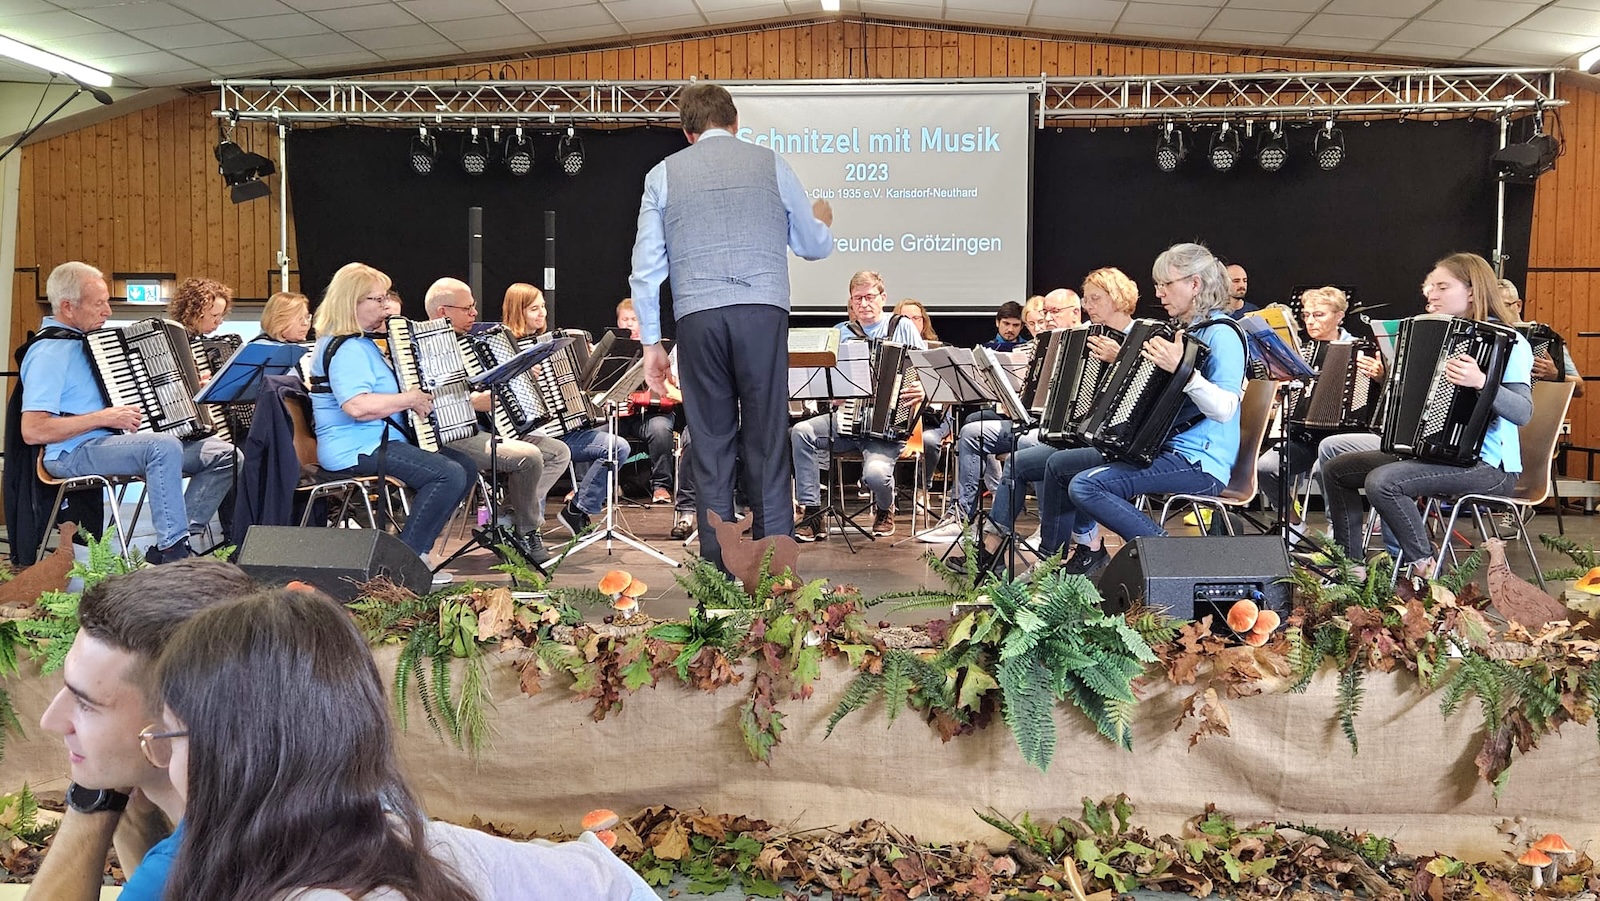 Schnitzel mit Musik in Karlsdorf-Neuthard